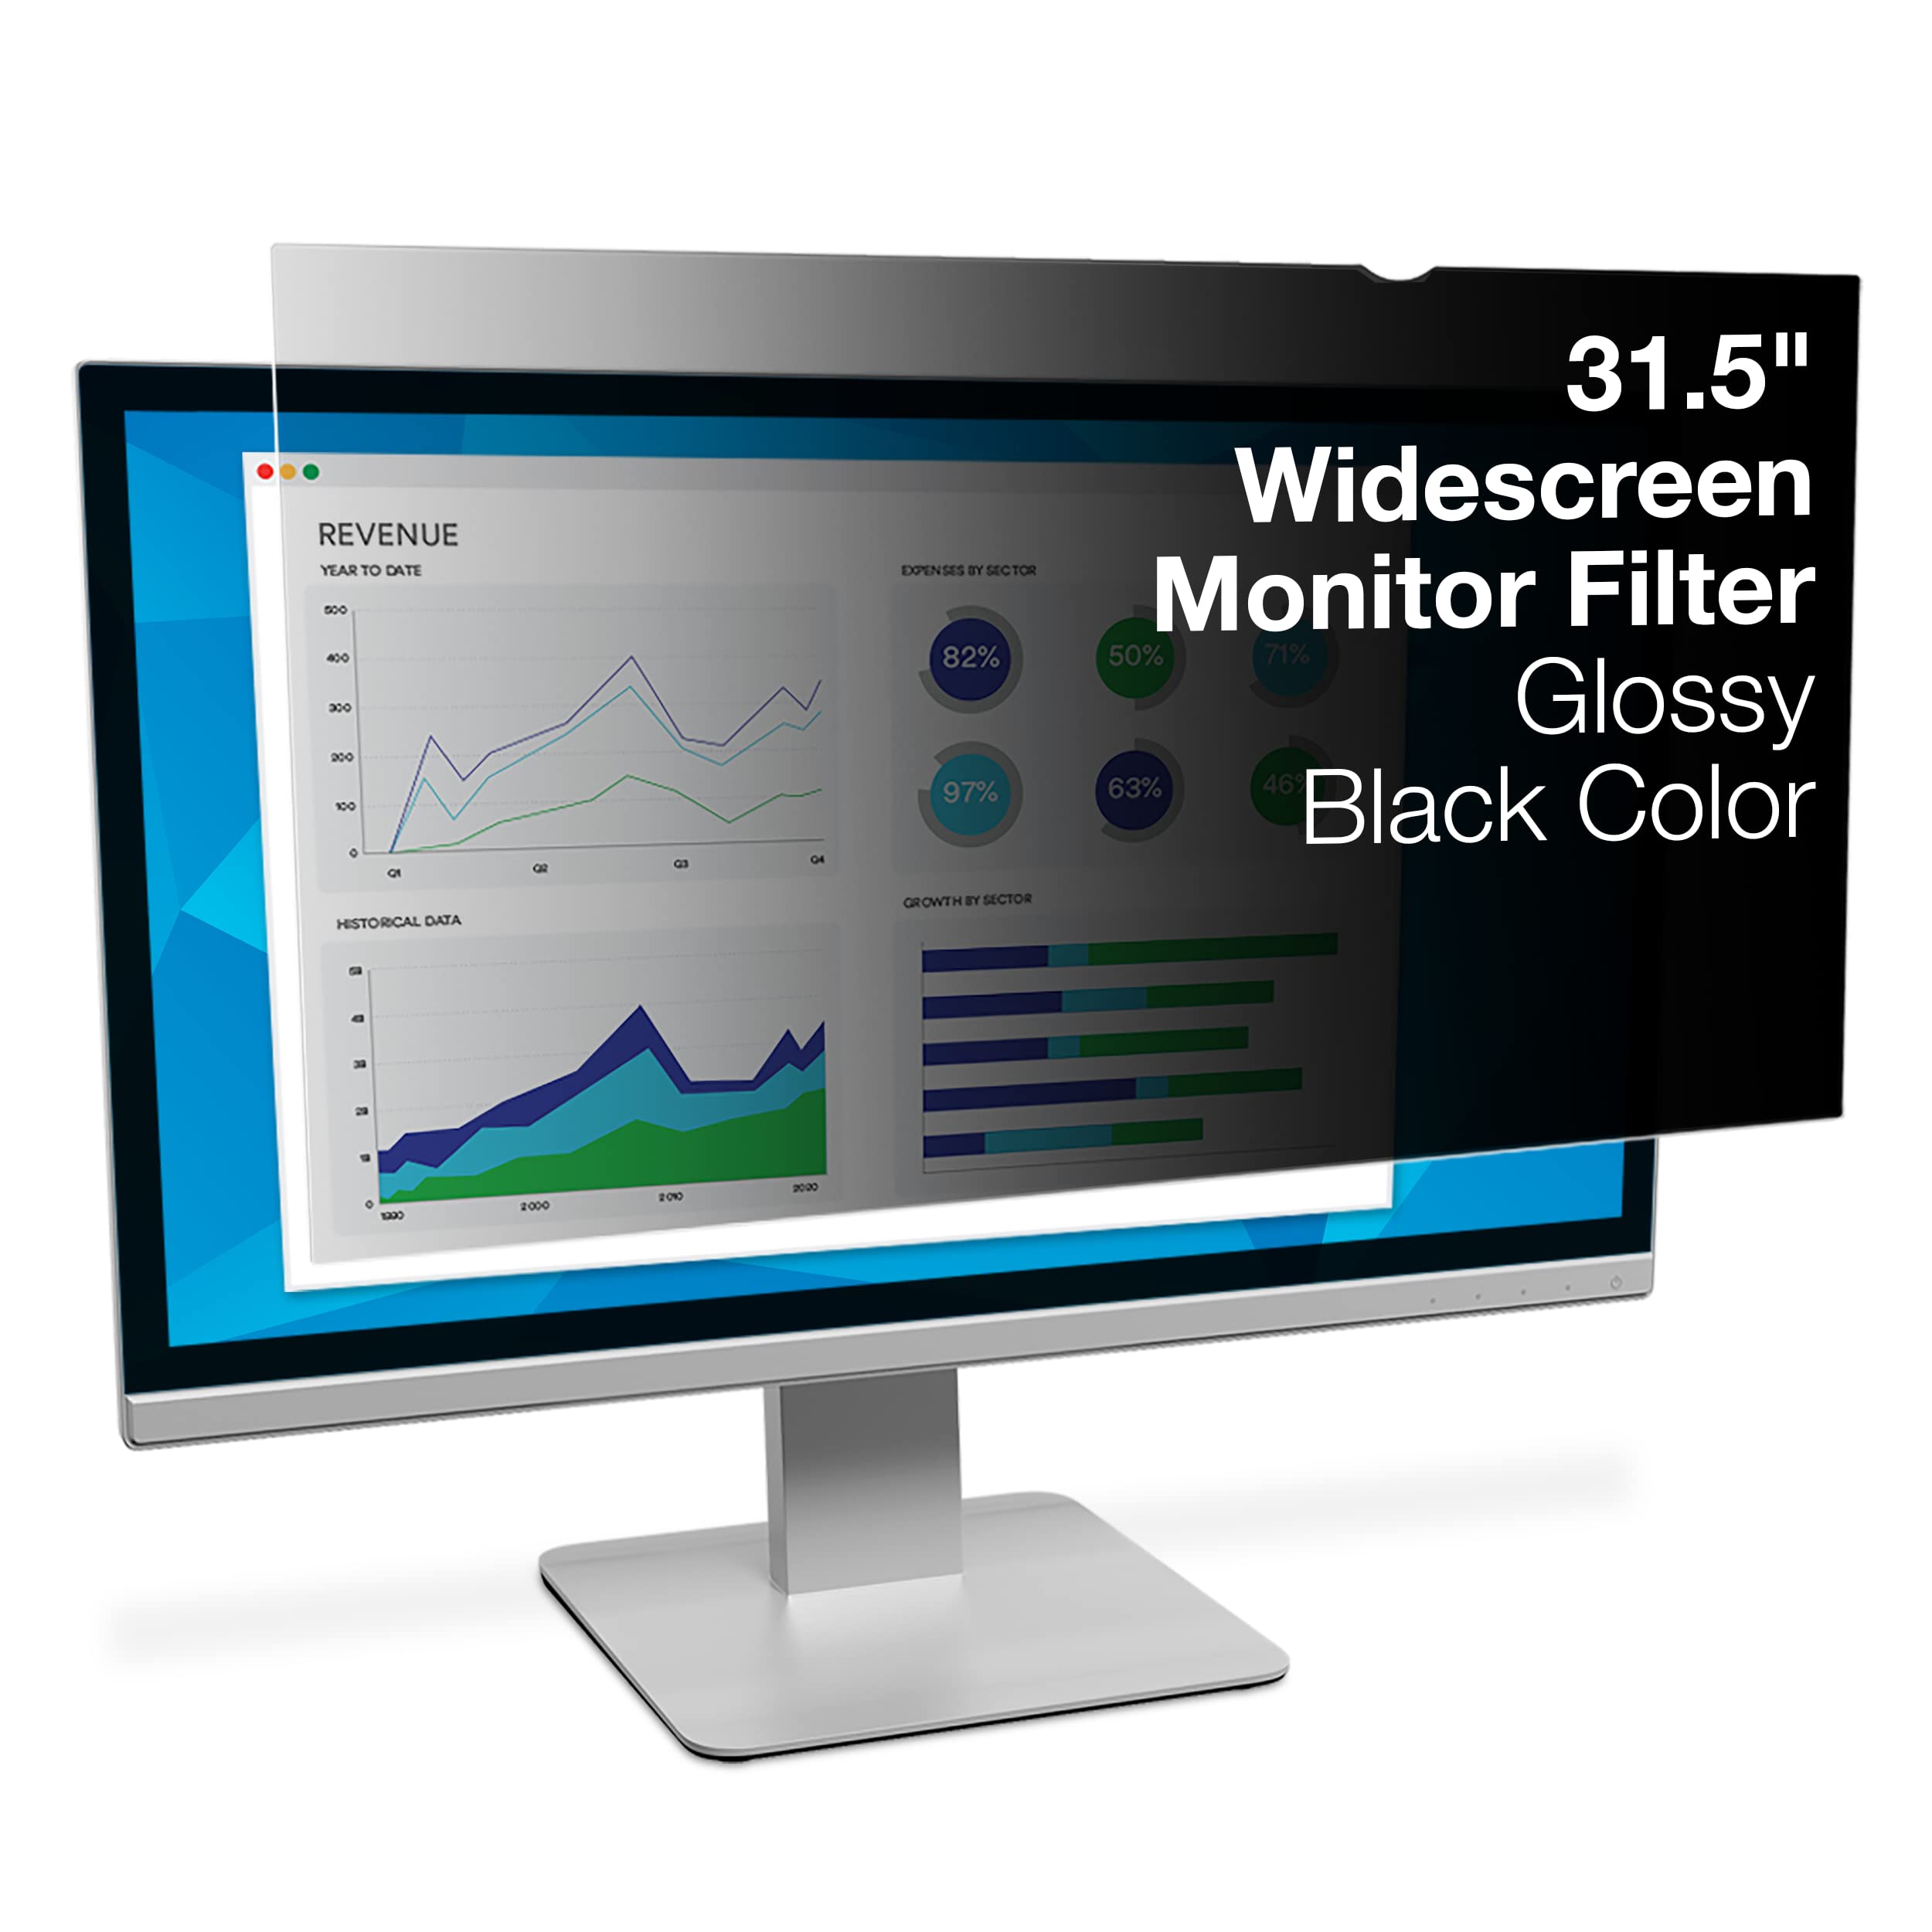 3M PF315W9B Blickschutzfilter Standard für Desktops 31.5Zoll Weit